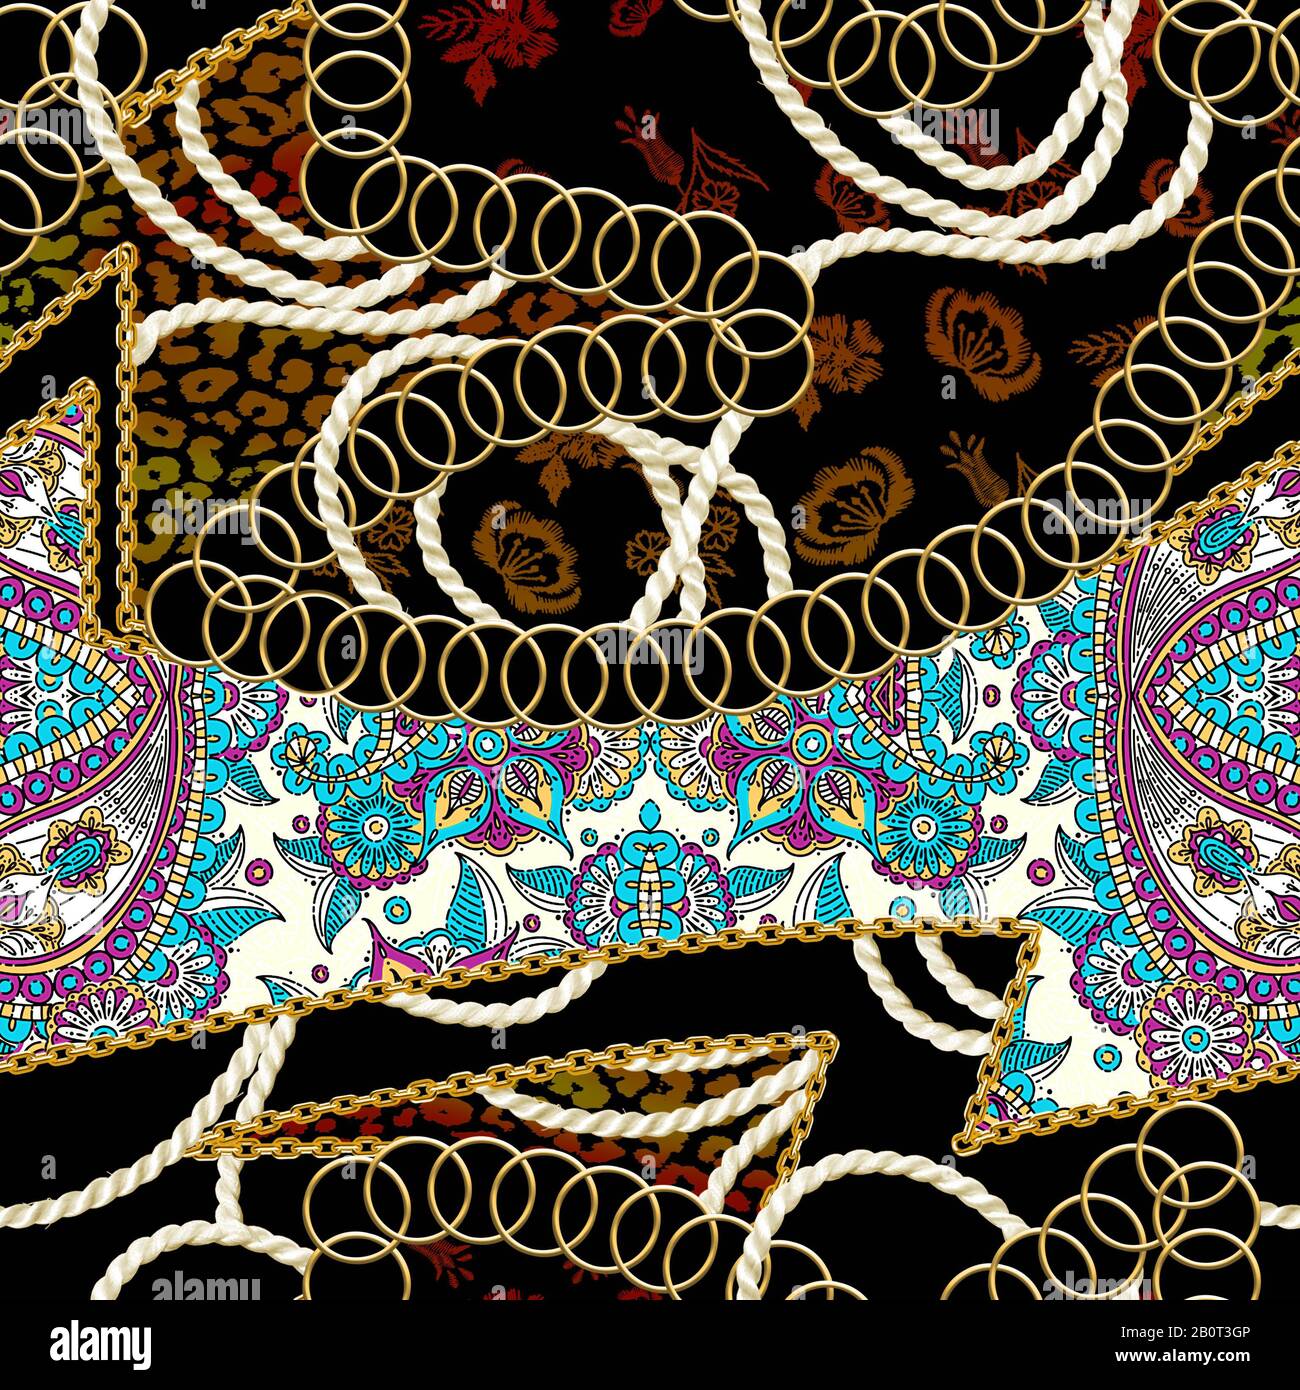 Nahtlose Goldketten, Blumen, Struktur der Leopardenhaut, Seil, ethnisches Muster auf schwarzem Hintergrund. Fabric-Druck. Modedesign. - Abbildung Stockfoto